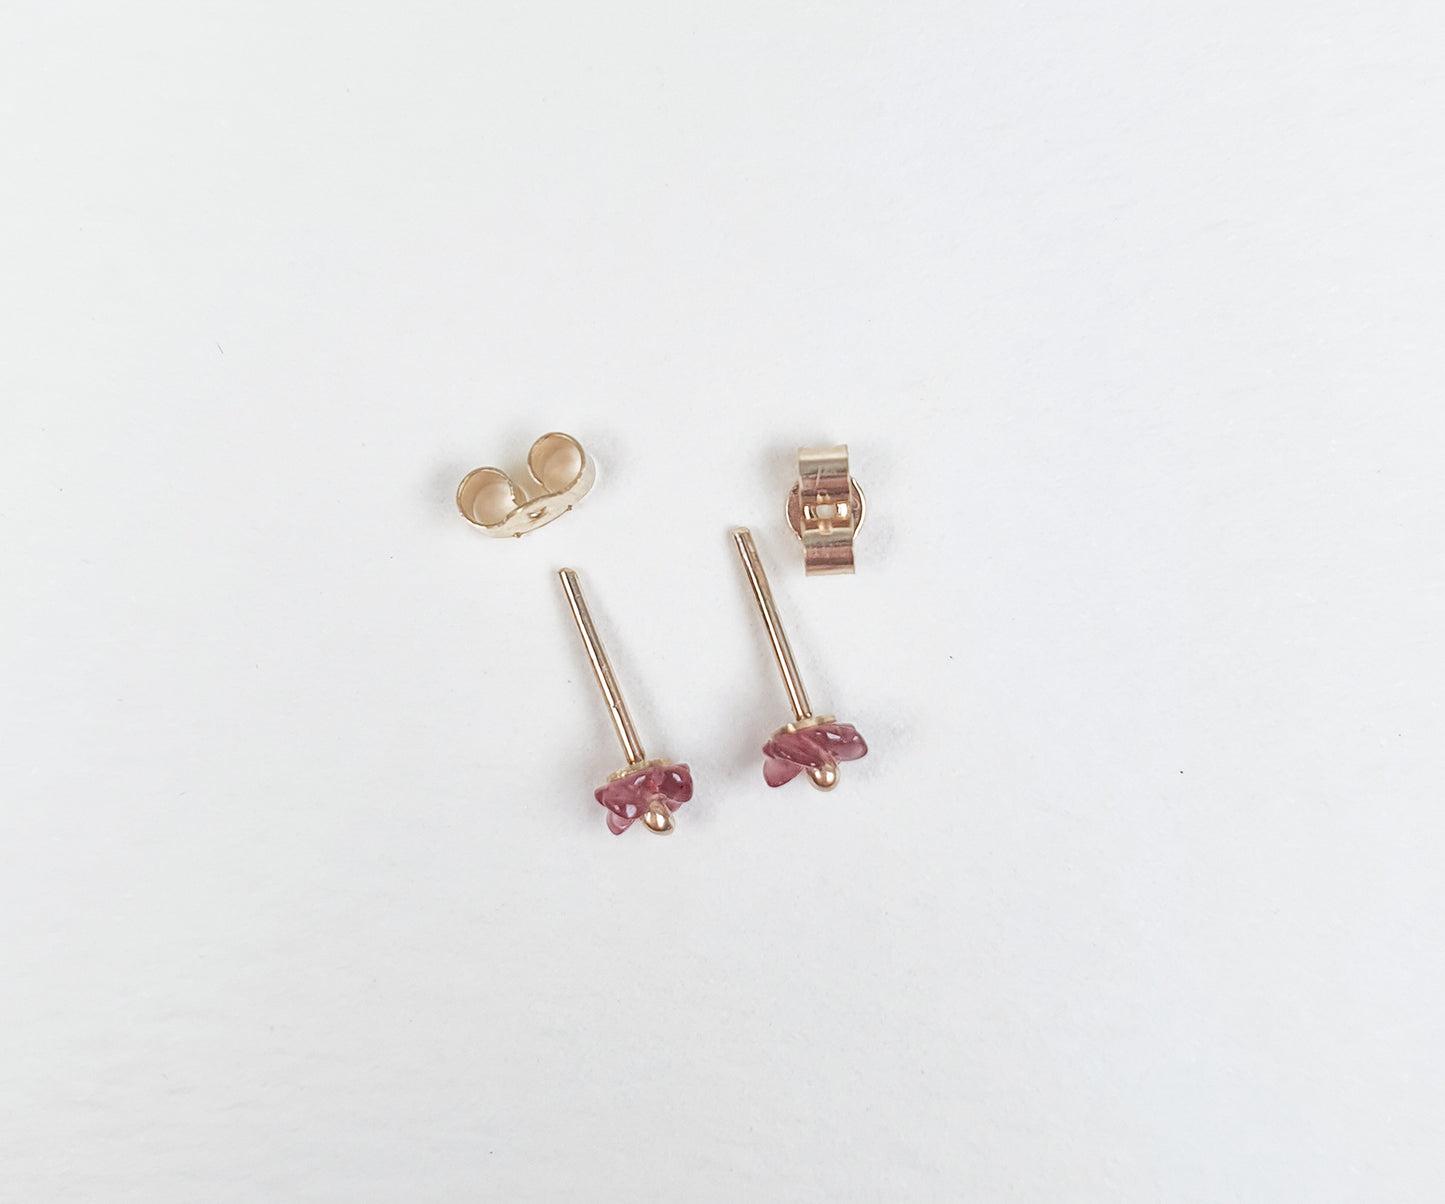 3mm Garnet Flower Stud Earrings in Gold